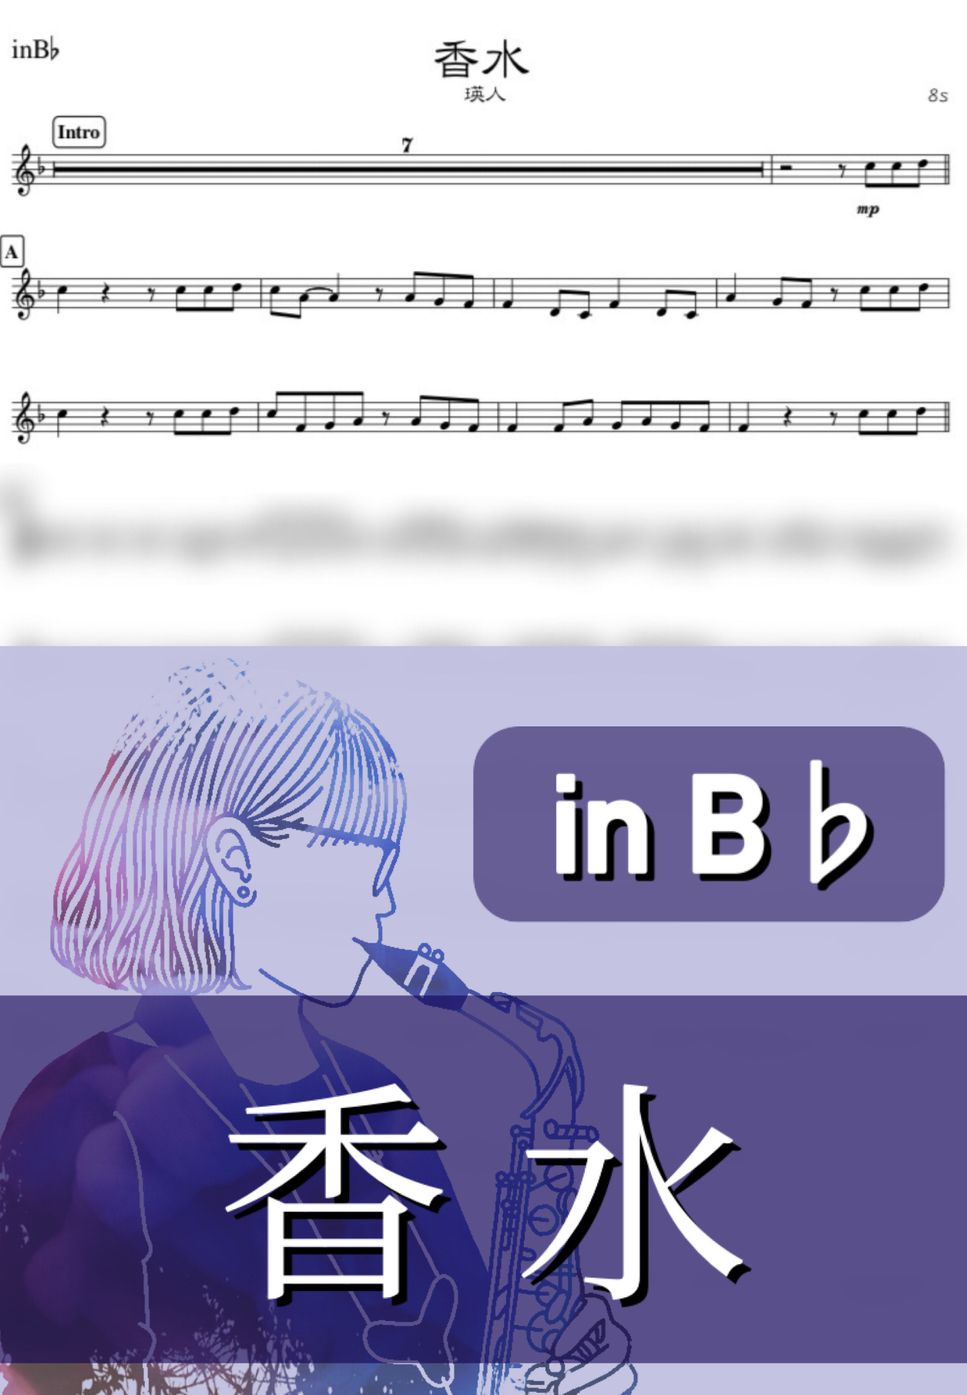 瑛人 - 香水 (B♭) by kanamusic